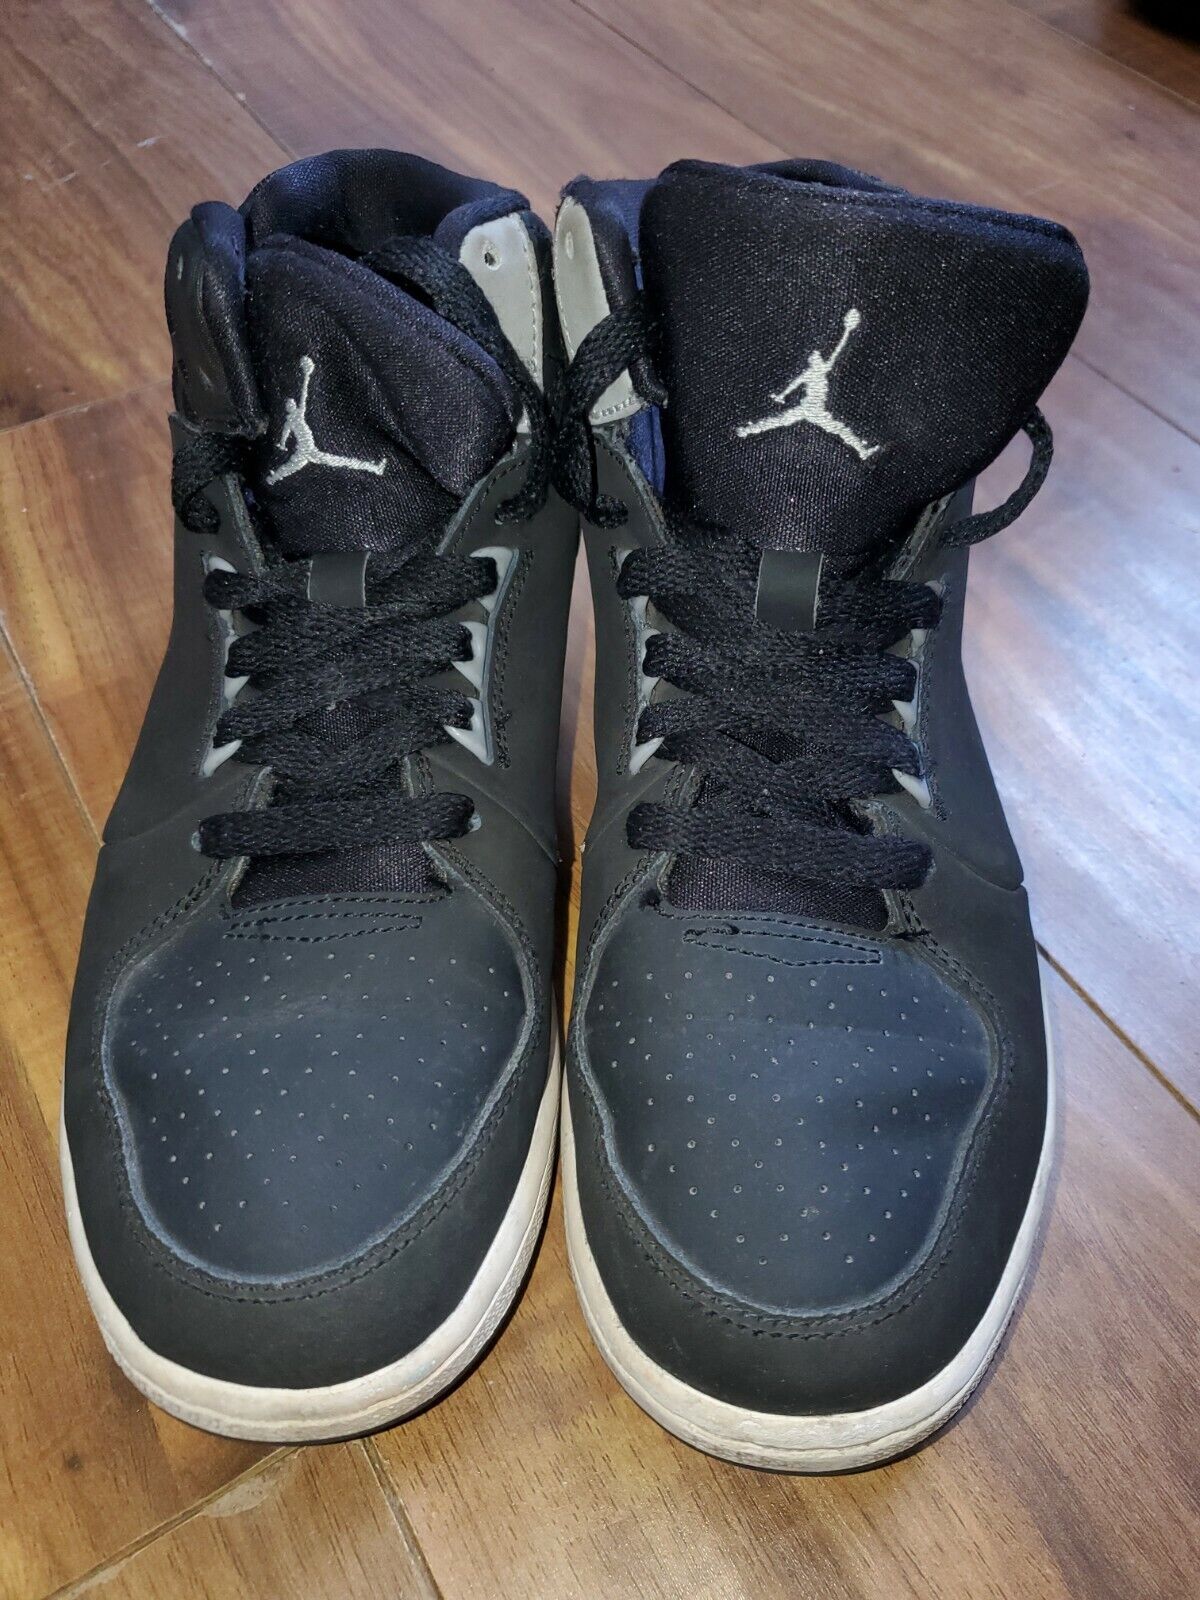 NIKE Jordan Youth Boy's Black/White Basketball Shoes Size 5.Y (707320-004)